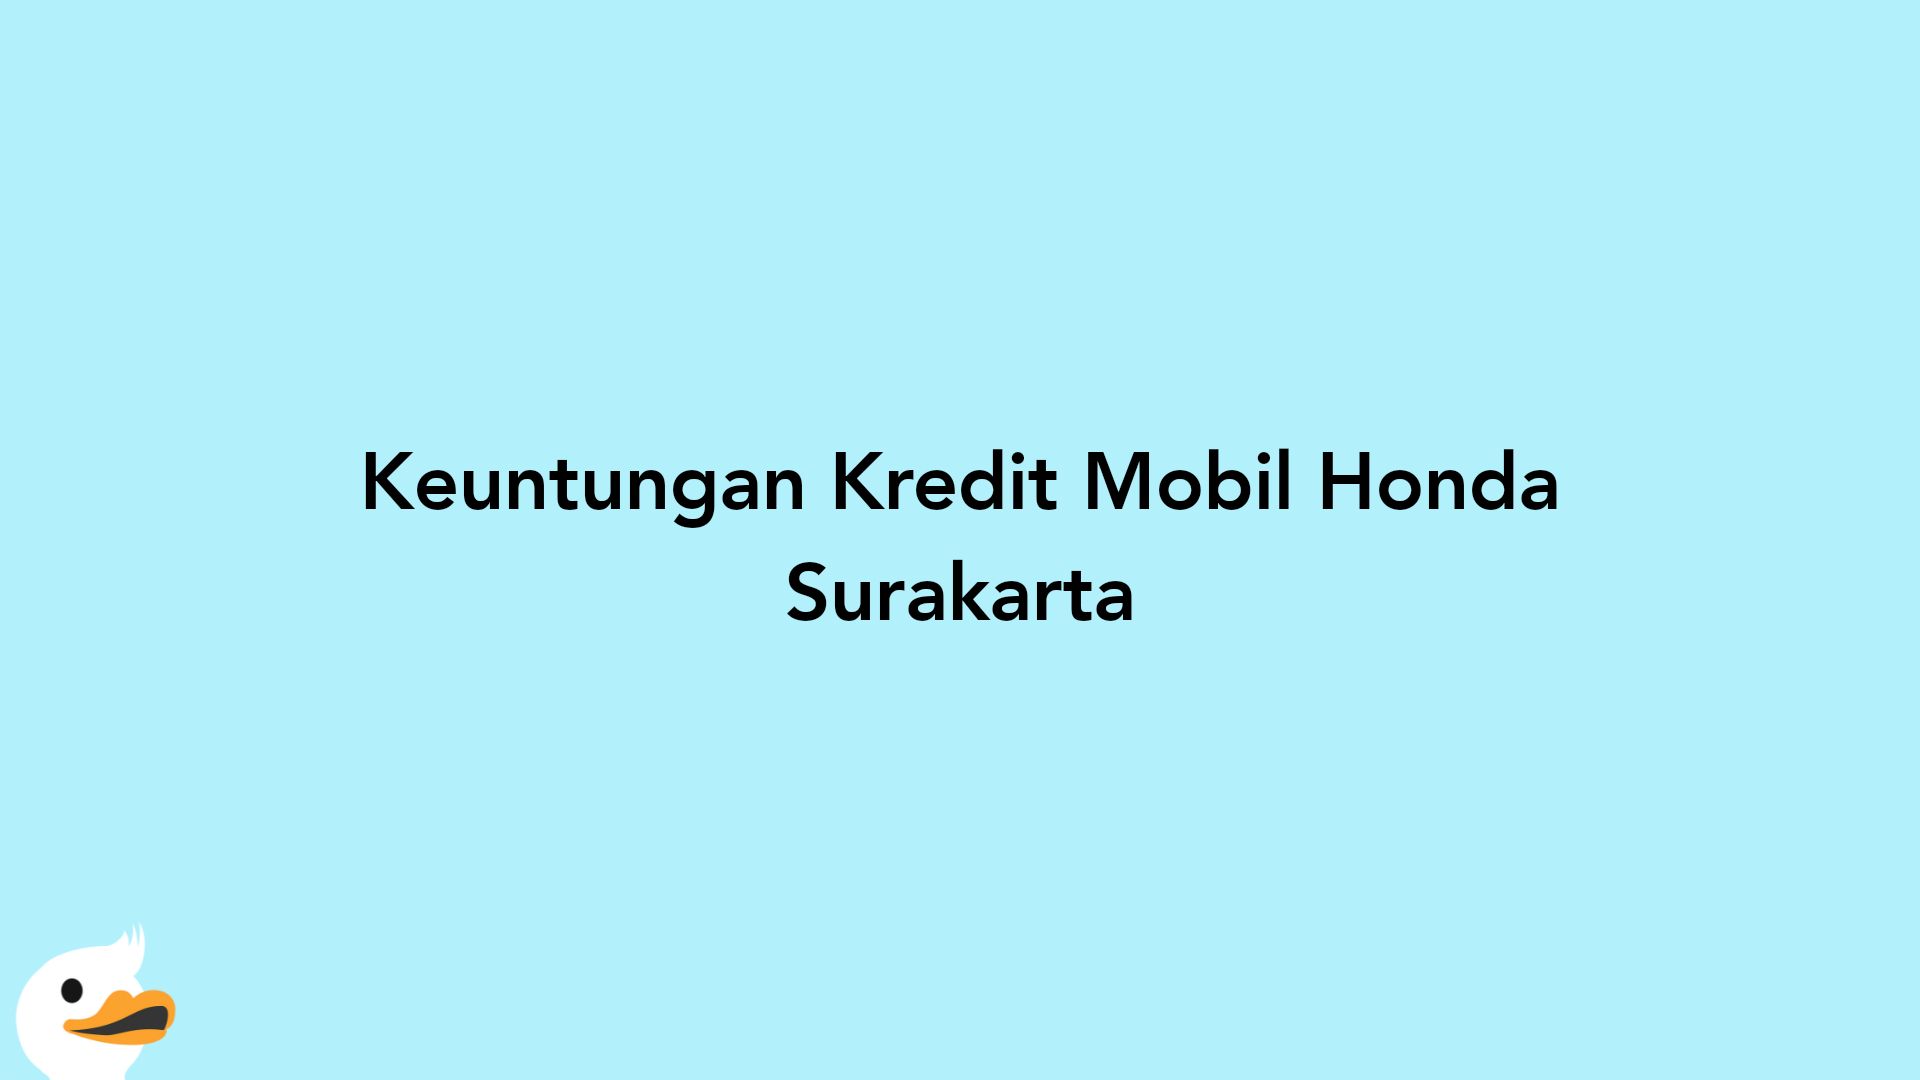 Keuntungan Kredit Mobil Honda Surakarta